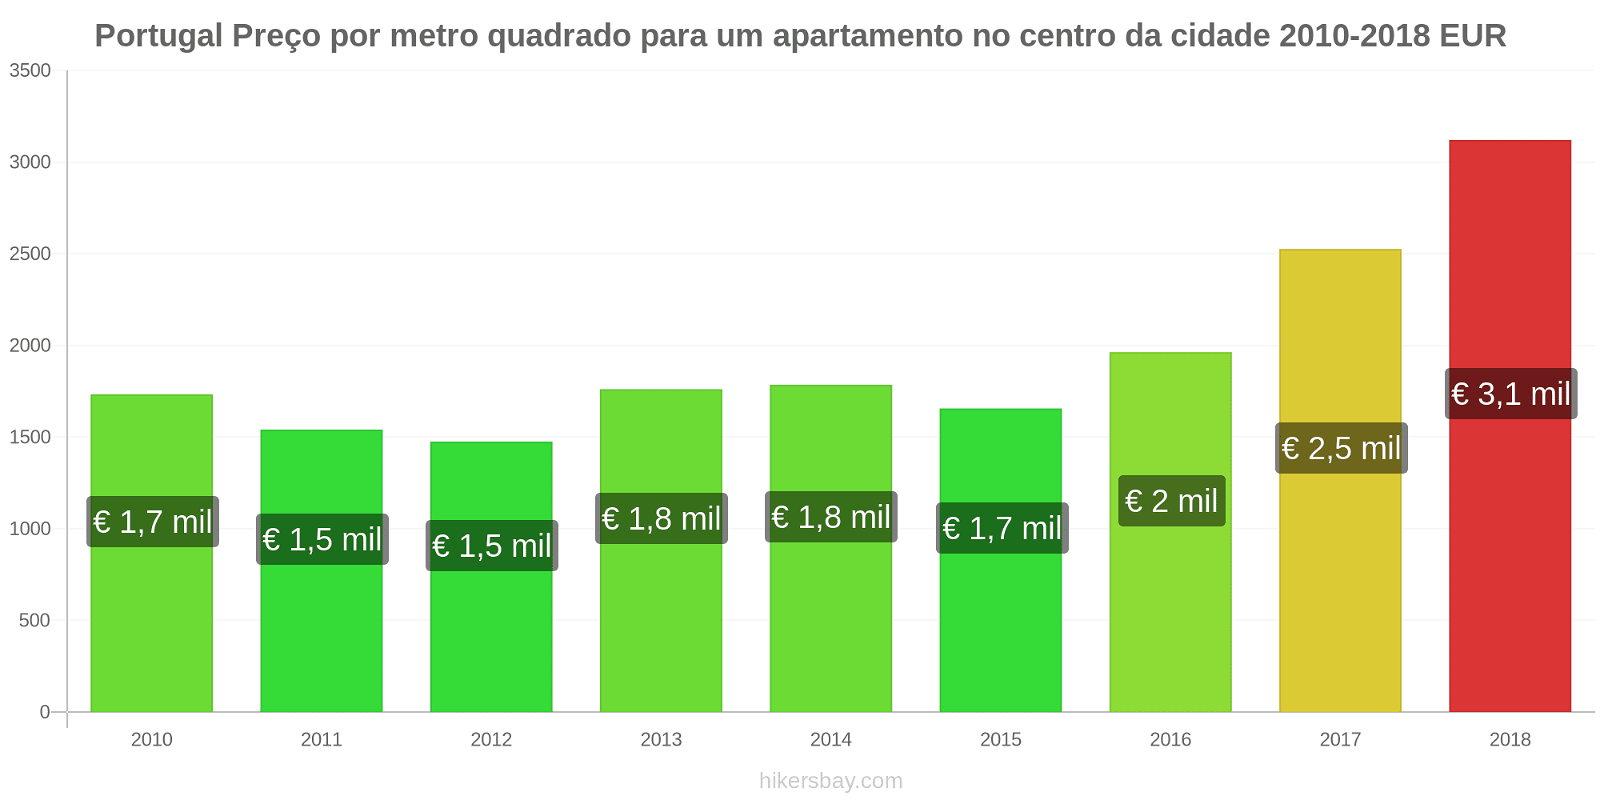 Portugal mudanças de preços Preço por metro quadrado de um apartamento no centro da cidade hikersbay.com